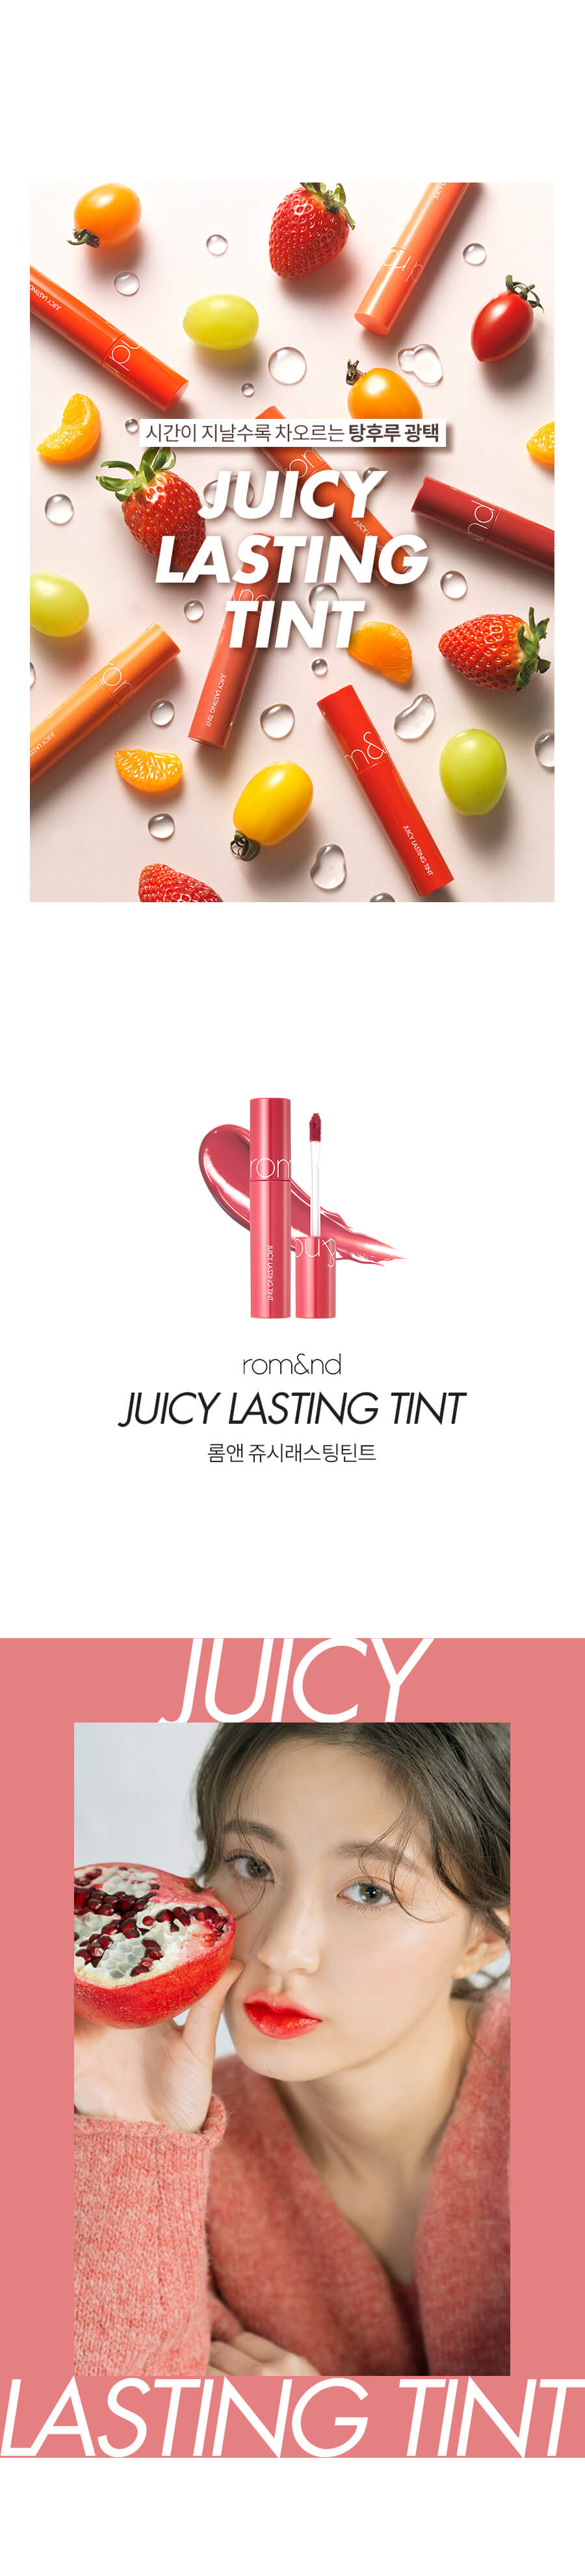 rom&nd, ลิป rom&nd, rom&nd Juicy Lasting Tint, rom&nd Juicy Lasting Tint รีวิว, rom&nd Juicy Lasting Tint ราคา, rom&nd Juicy Lasting Tint สีไหนสวย, rom&nd Juicy Lasting Tint 5.5 g. #06 ทินท์เนื้อชุ่มฉ่ำ ให้ความฉ่ำวาวสุดๆ เนื้อทินท์ทาง่าย และเนียนเรียบ เกลี่ยง่าย ให้สีสันสดใสและสม่ำเสมอ, rom&nd Juicy Lasting Tint 5.5 g. #06